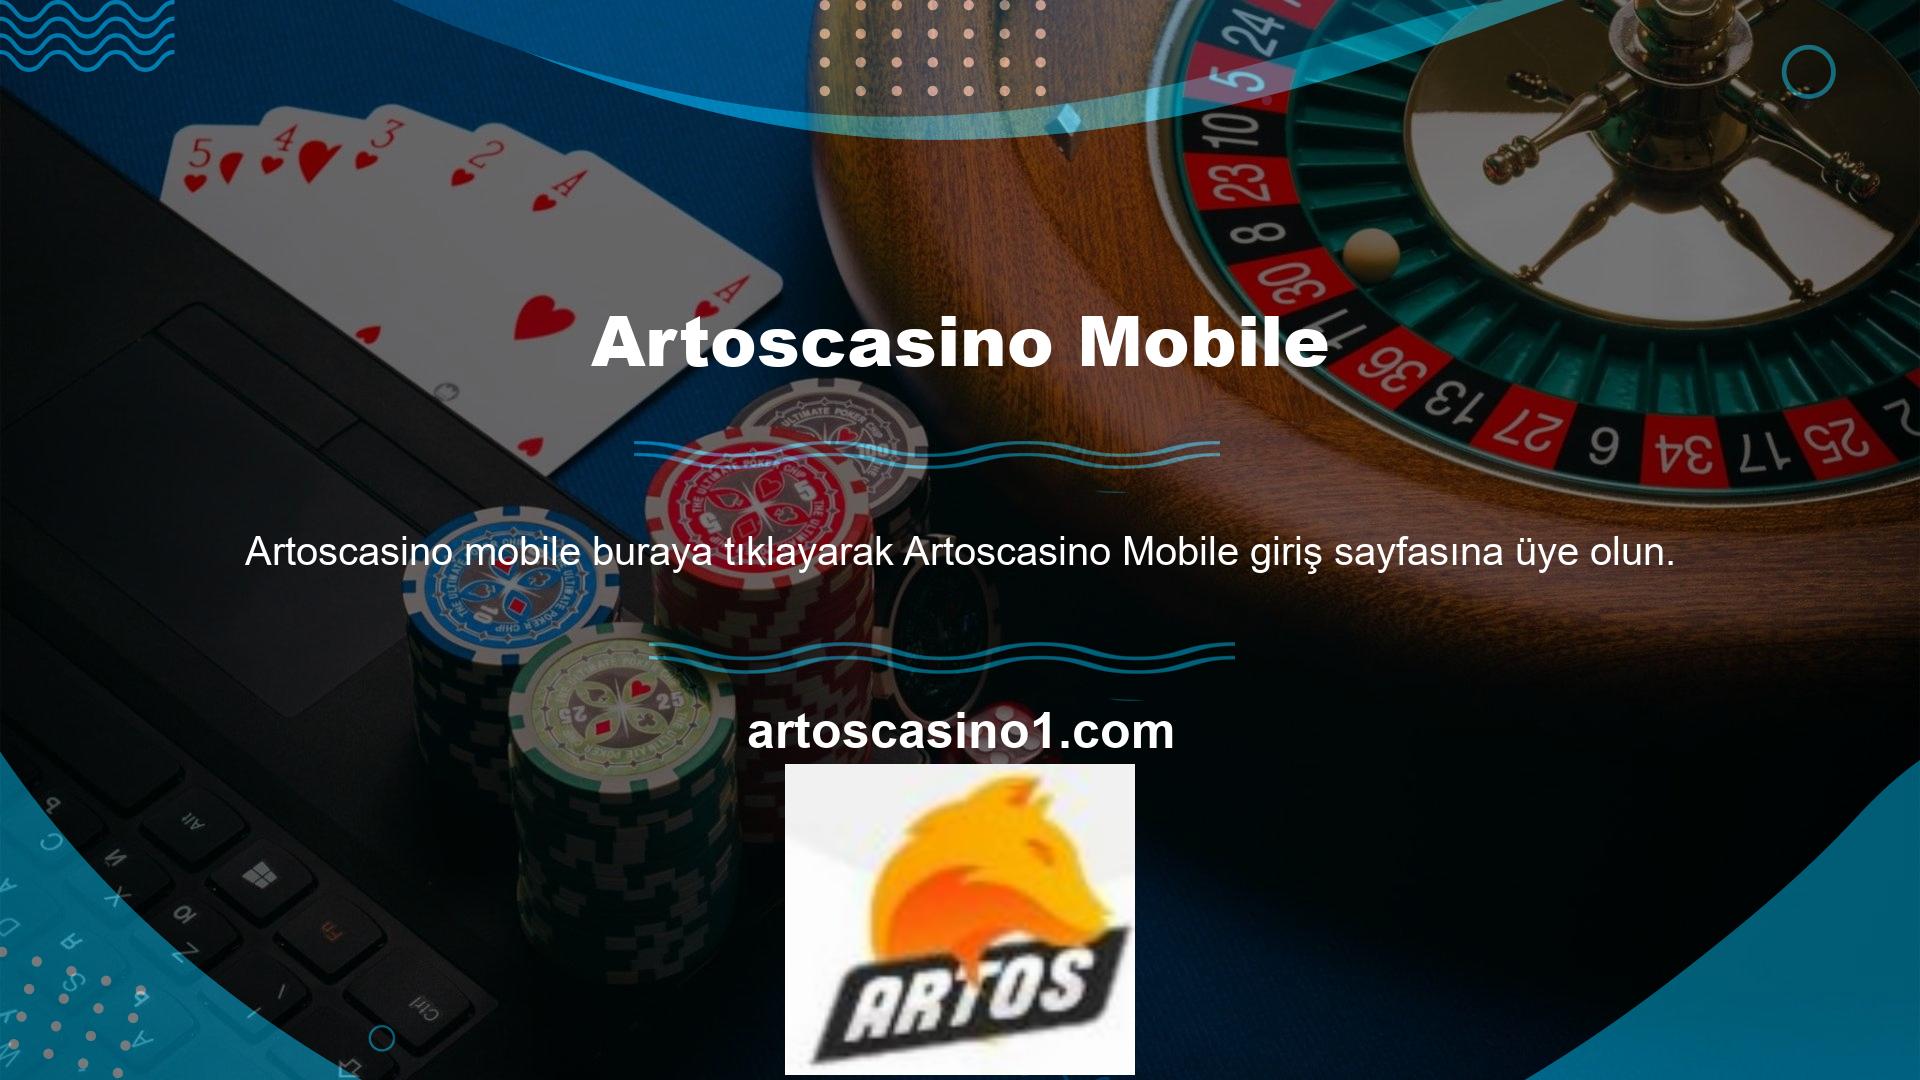 Artoscasino, web sitesi için oyun dostu bir mobil uygulama oluşturdu